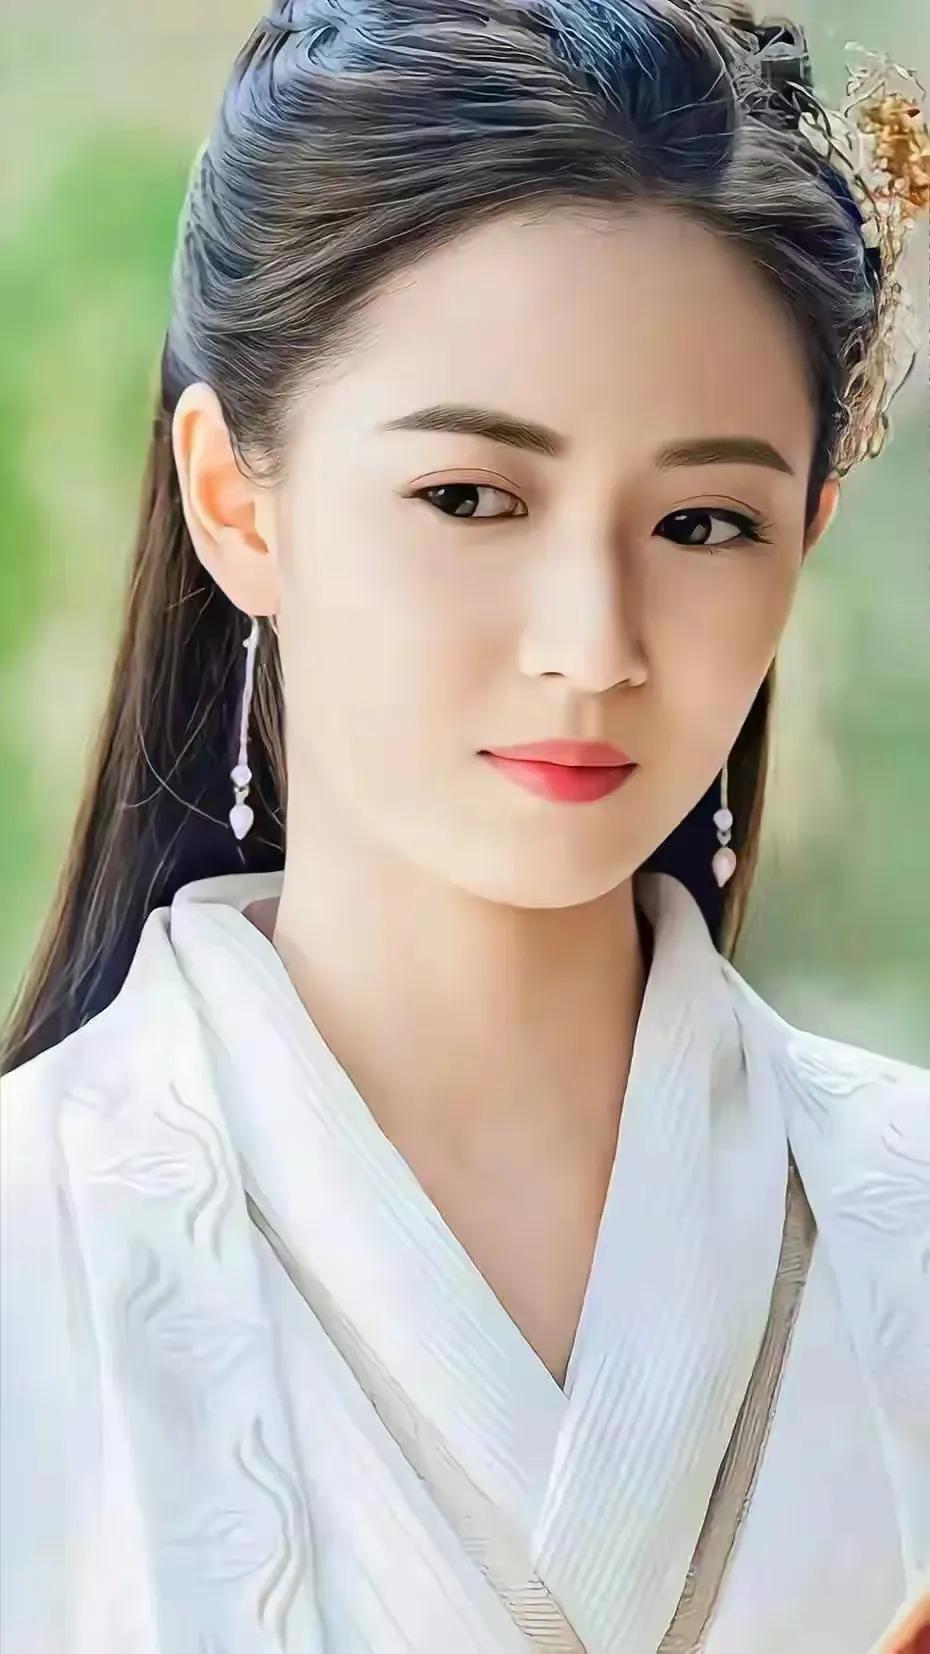 The most beautiful princess Zhao Min - iMedia